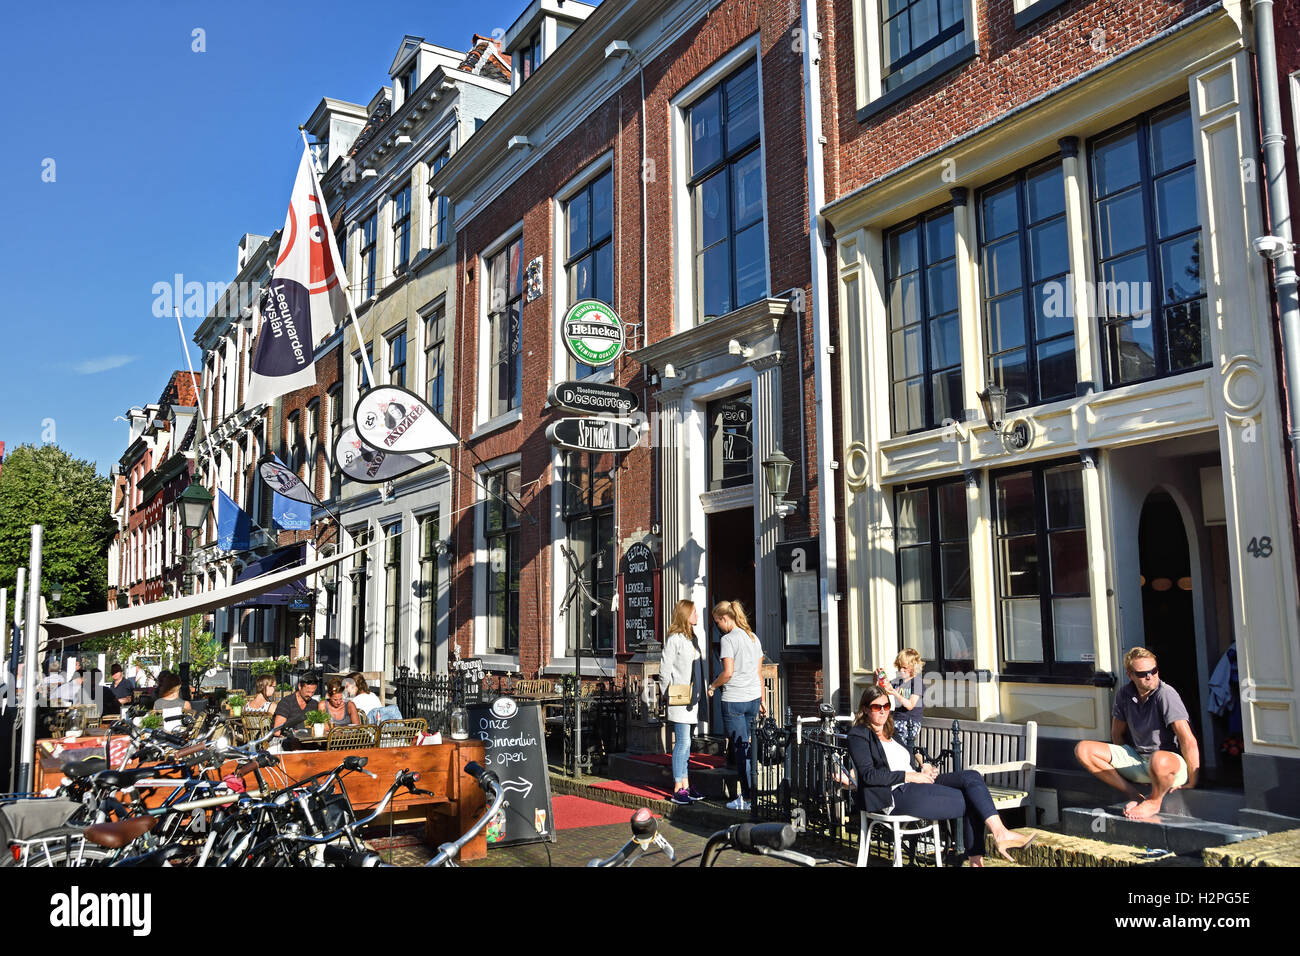 Eetcafe Spinoza und Theaterrestaurant Descartres auf die Eewal Leeuwarden alte holländische Stadt Friesland Fryslan Niederlande Stockfoto